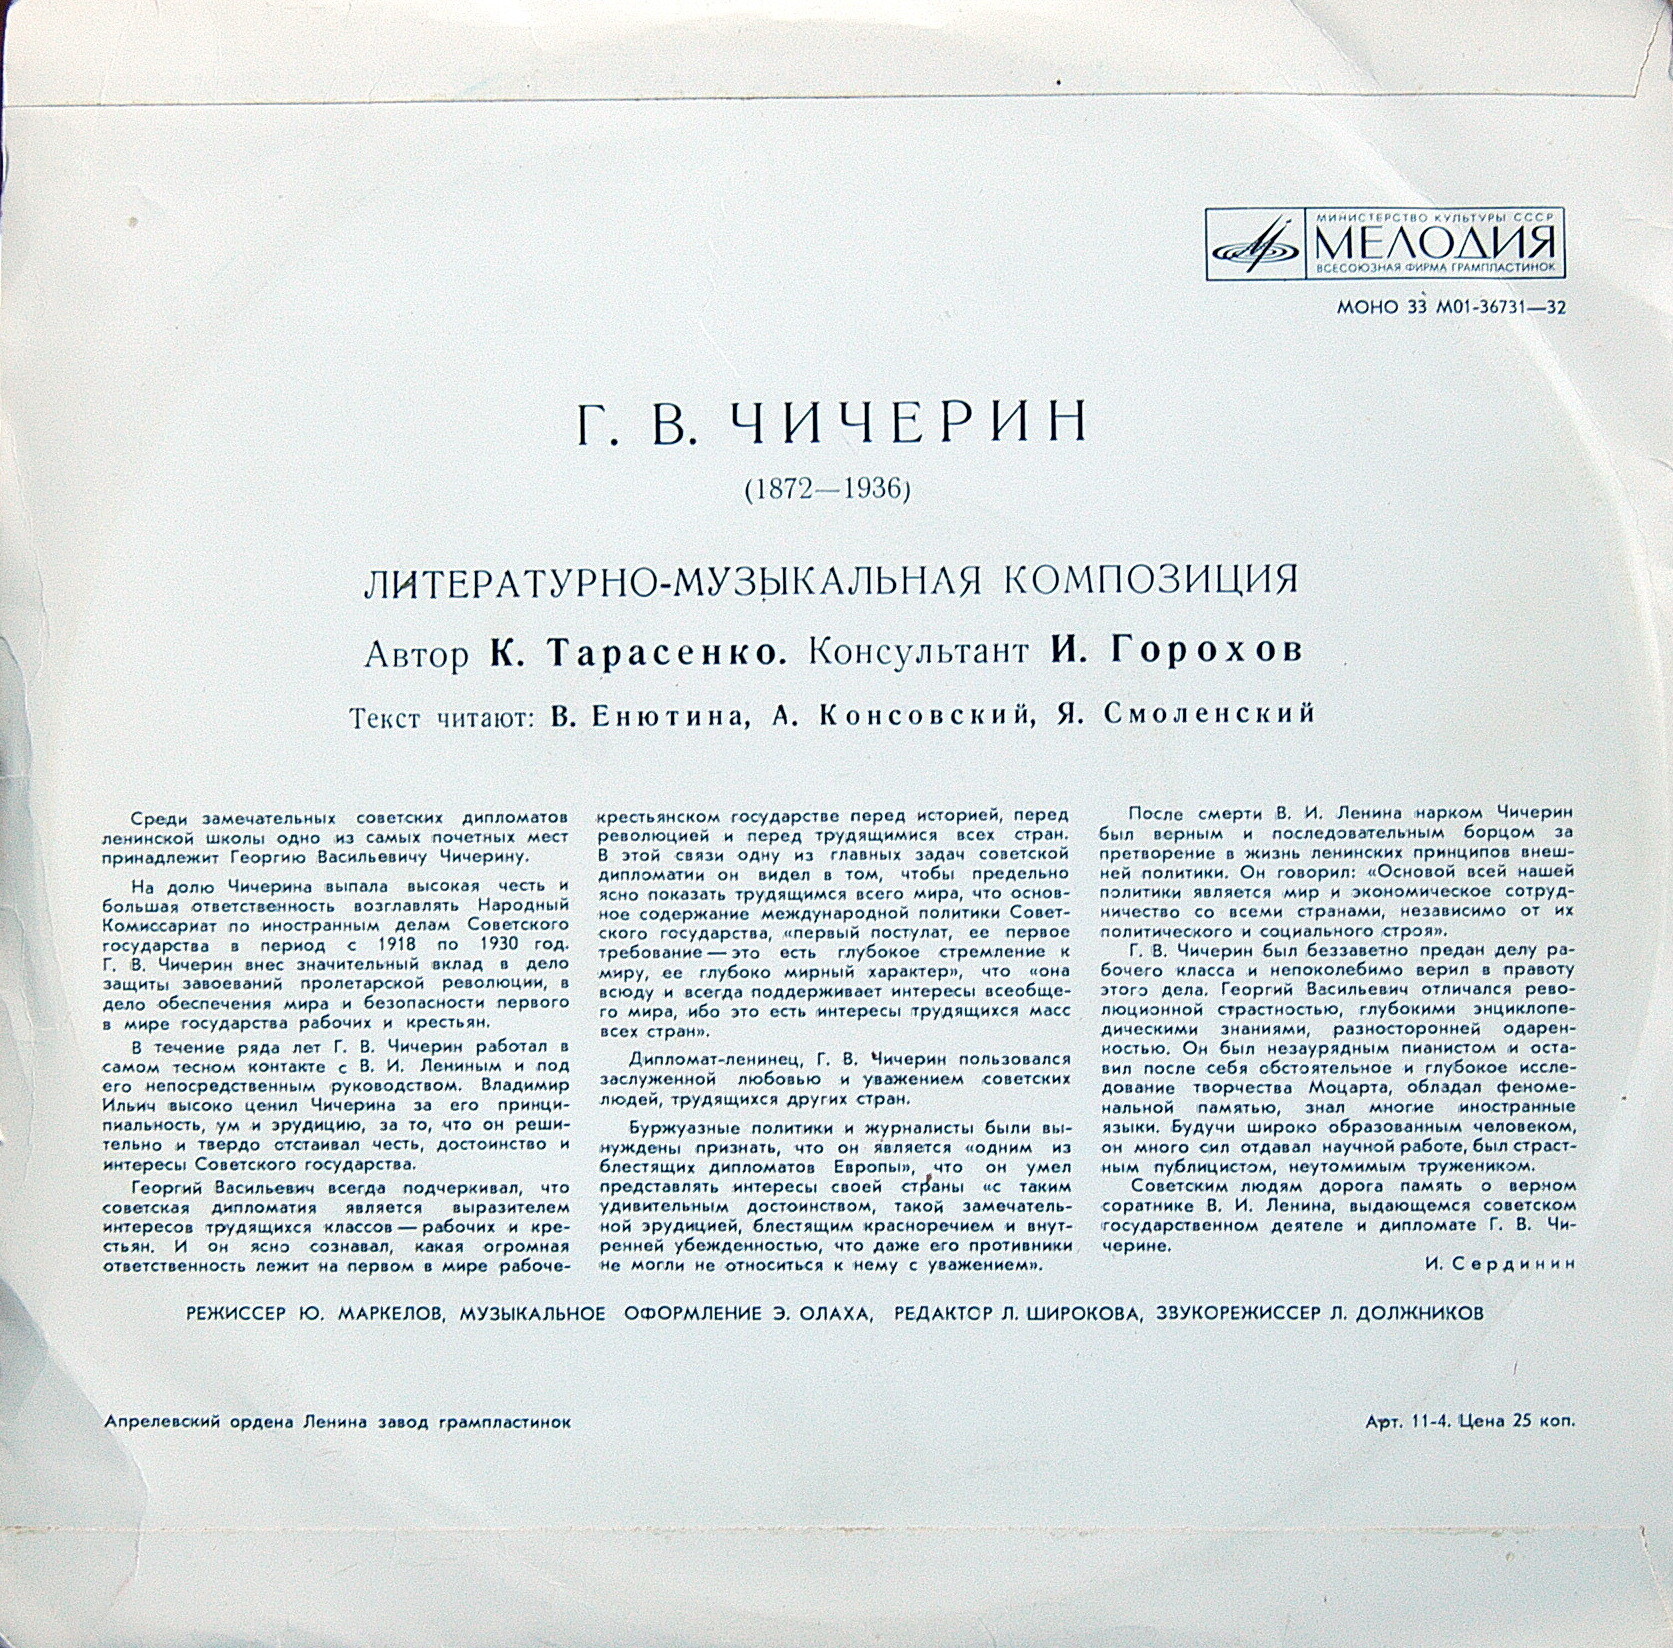 Г. В. ЧИЧЕРИН (1872—1936). Литературно-музыкальная композиция